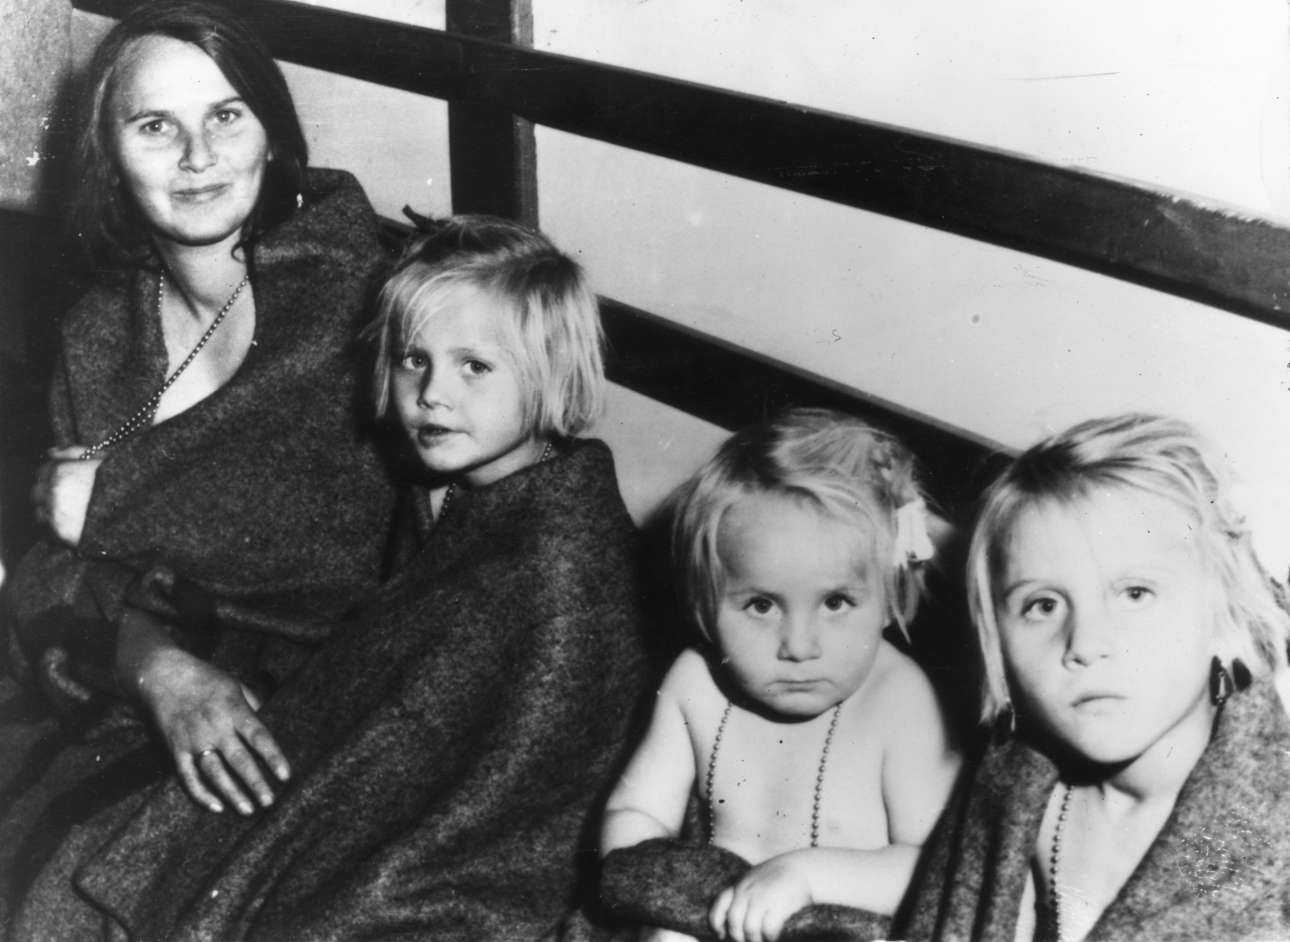 O άντρας της χάθηκε στην εξέγερση. Η γυναίκα με τα τρία παιδιά της έχουν φθάσει στην Ελβετία. Περί τις 200.000 Ούγγροι διέφυγαν στη Δύση κατά την εισβολή των Σοβιετικών τον Νοέμβριο του 1956